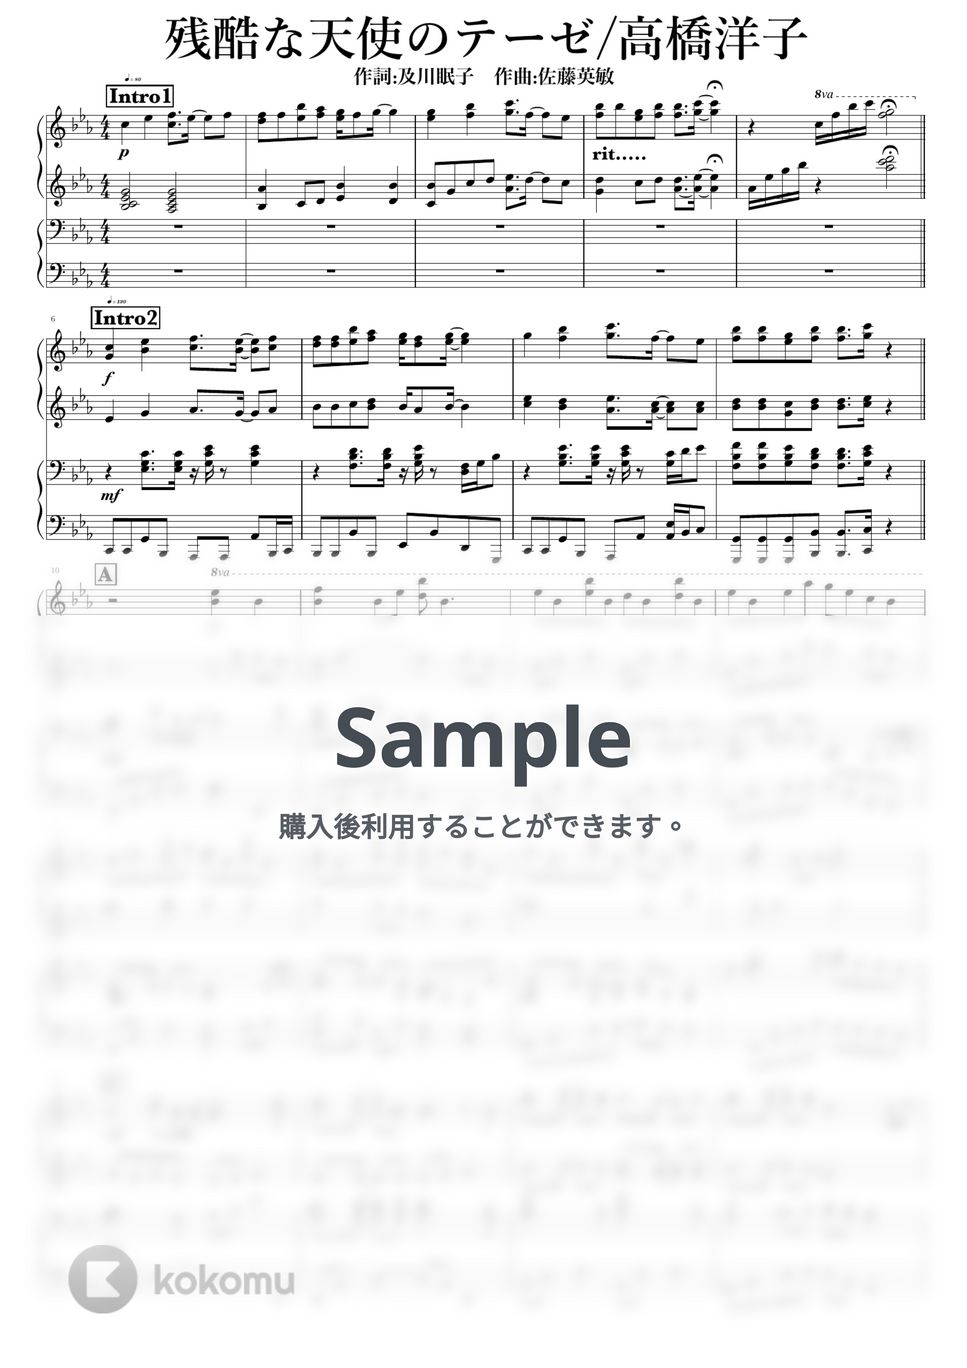 高橋洋子 - 残酷な天使のテーゼ by NOTES music